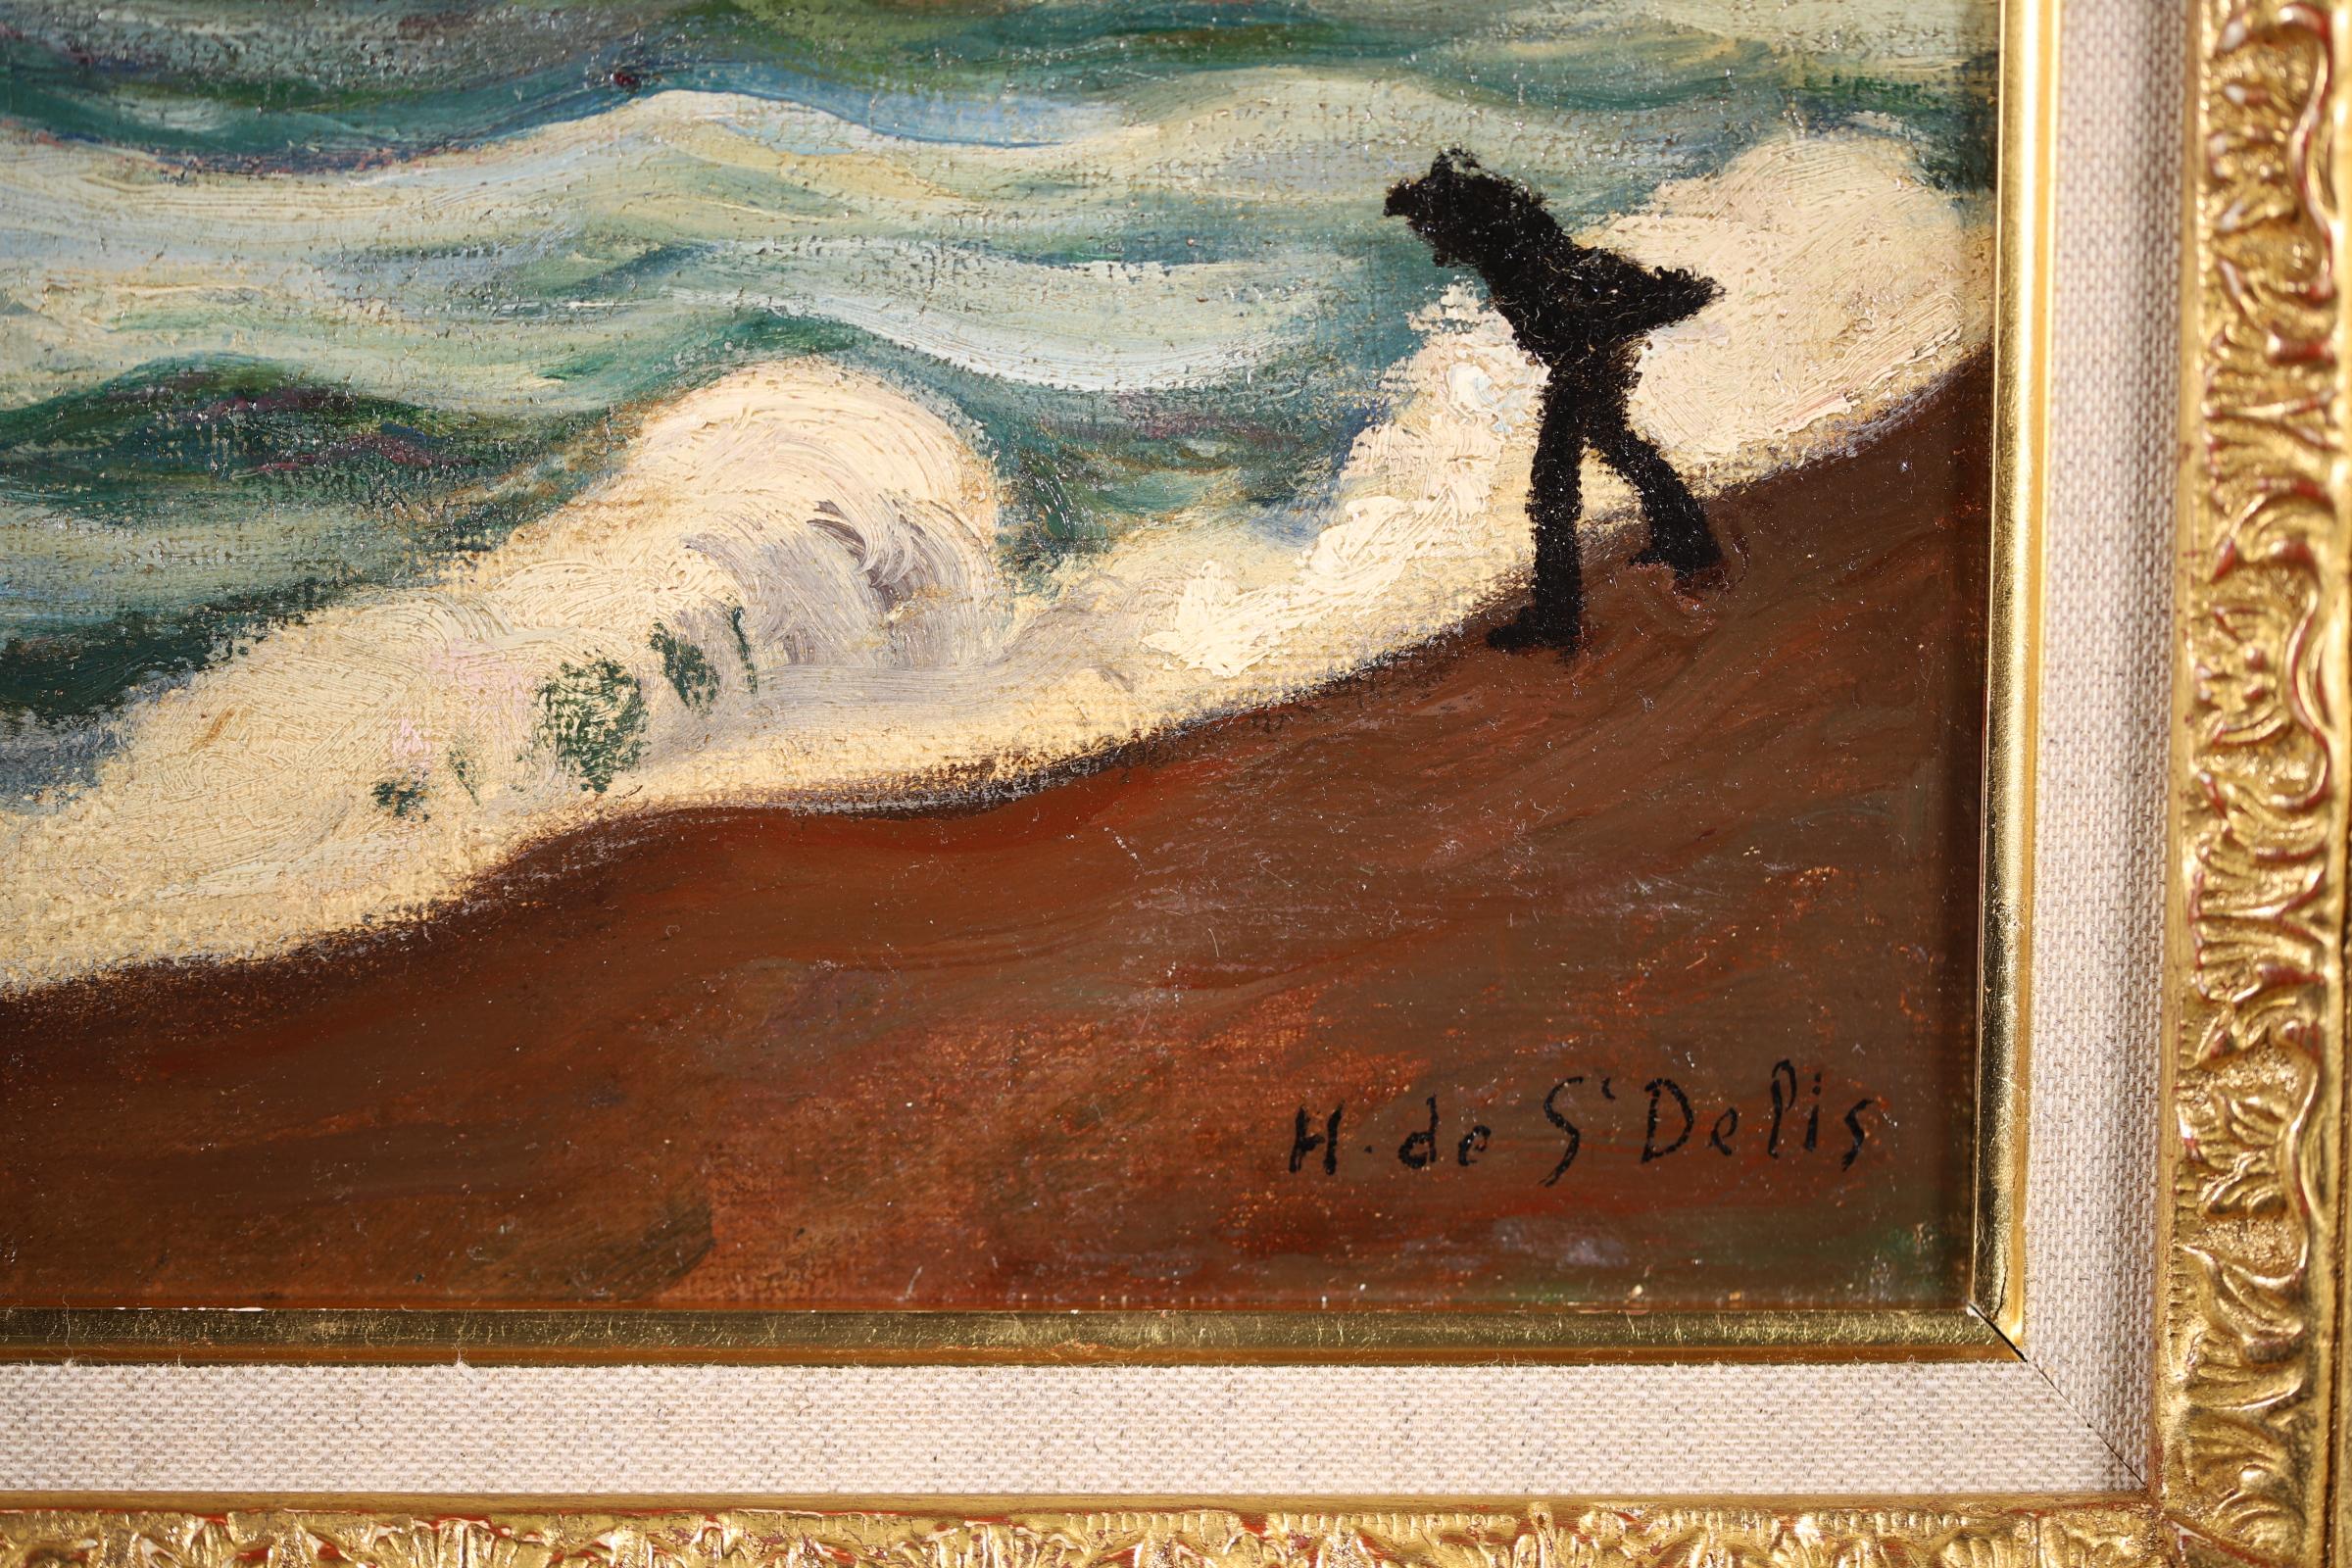 Stormy Weather - Honfleur - Post Impressionist Oil, Seascape by H de Saint-Delis For Sale 3